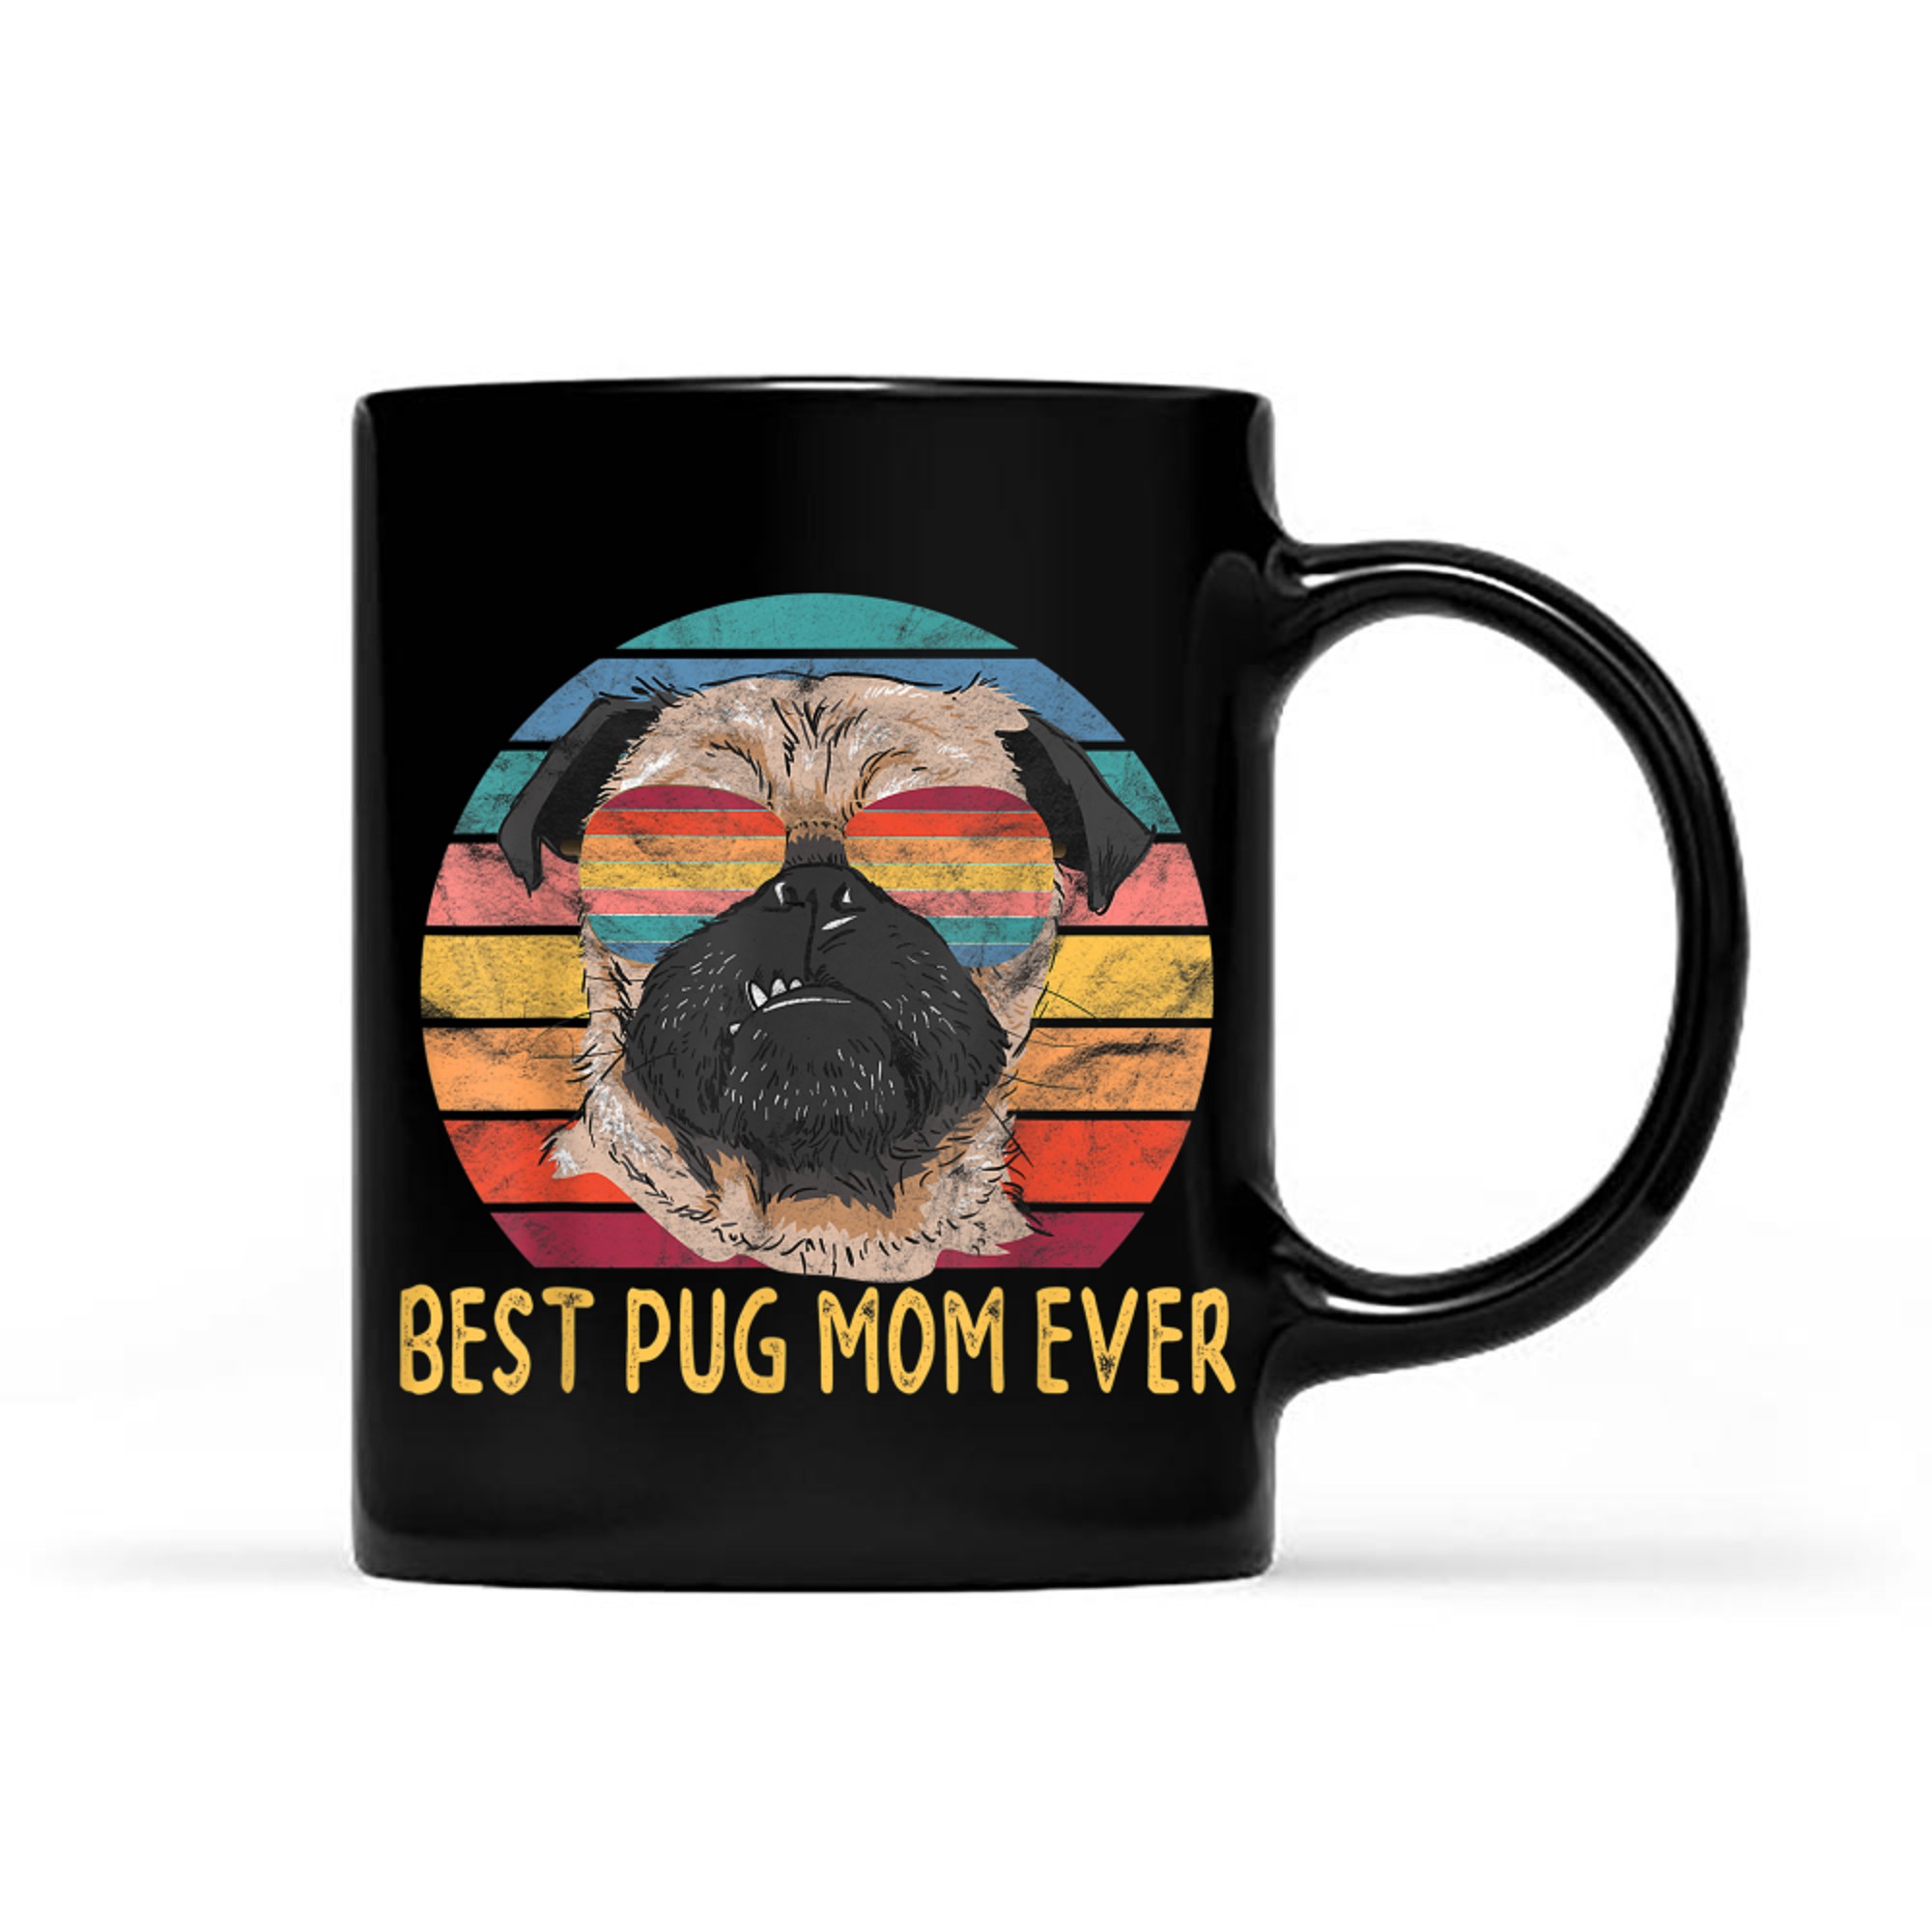 Best Pug Dog Mom Ever Gifts for Pug Moms mug black